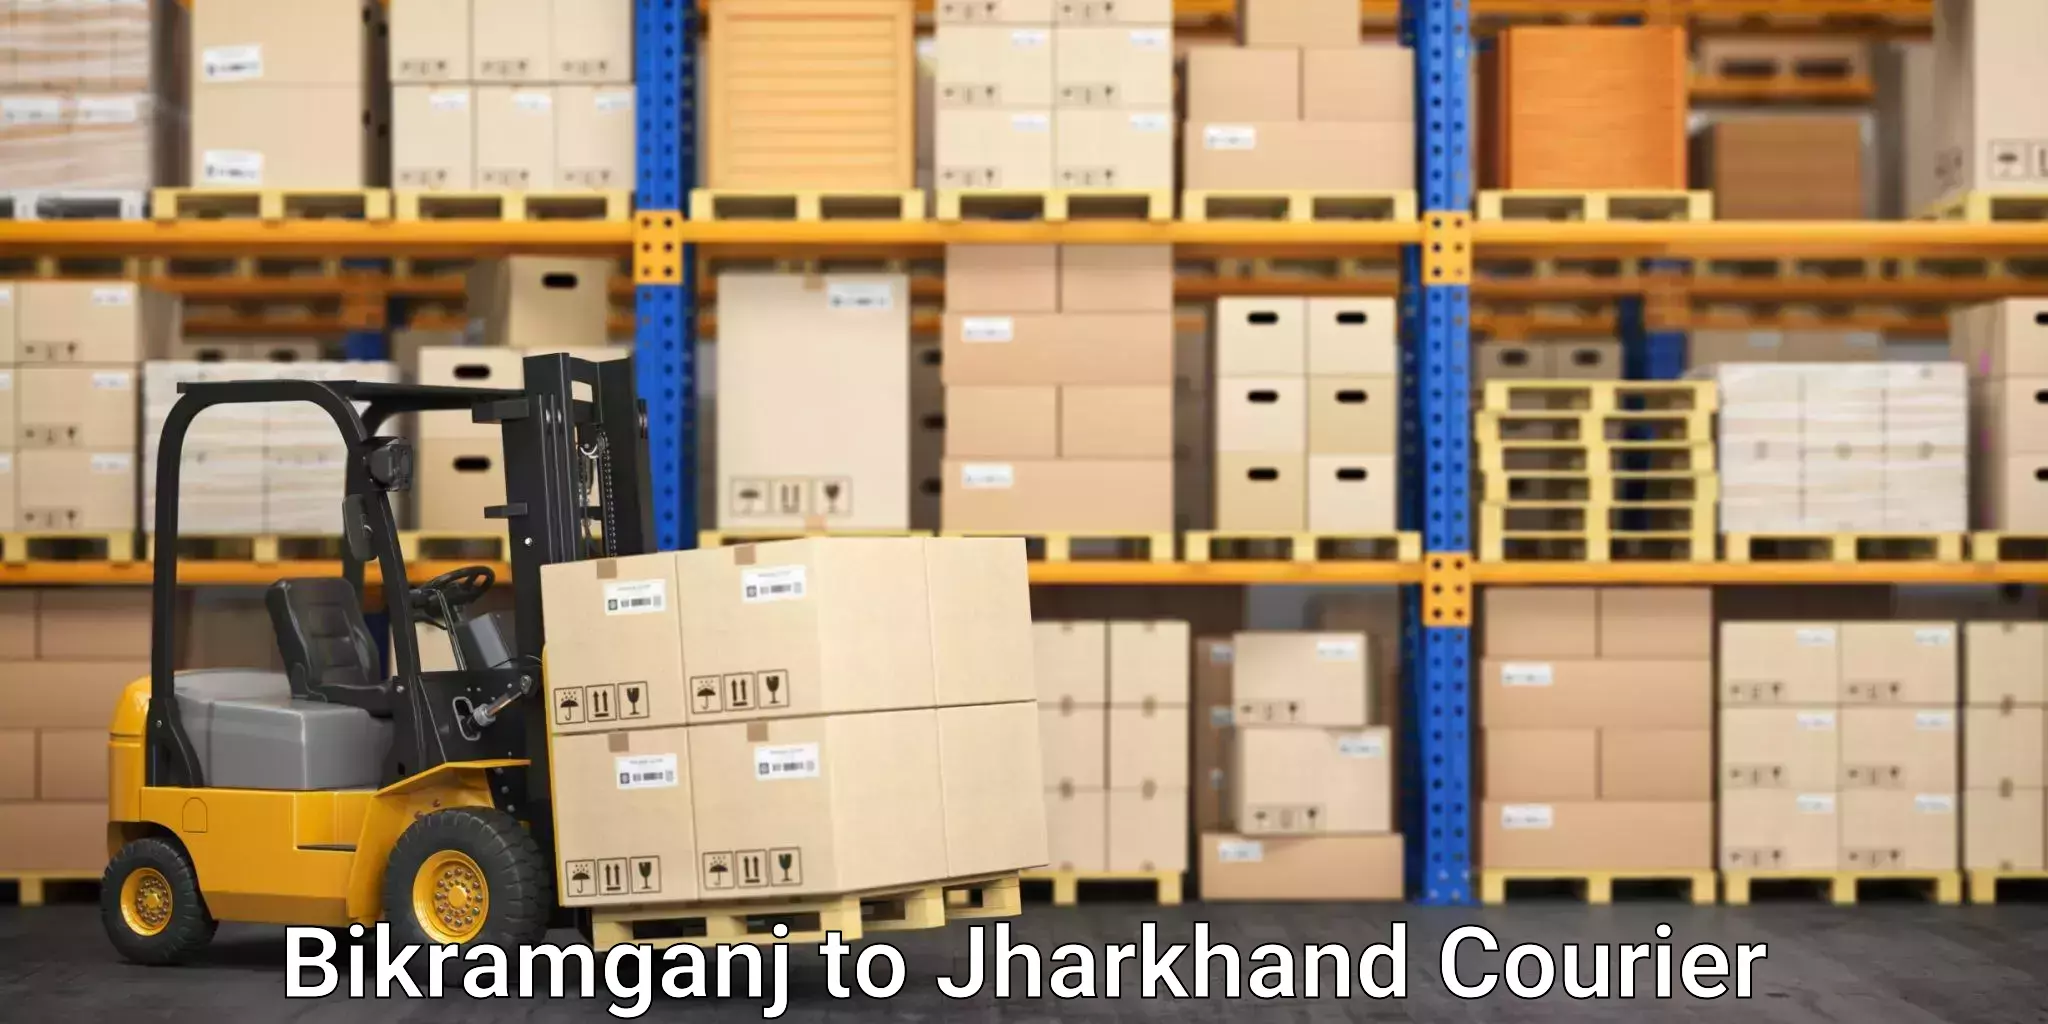 Efficient household movers Bikramganj to Bagodar